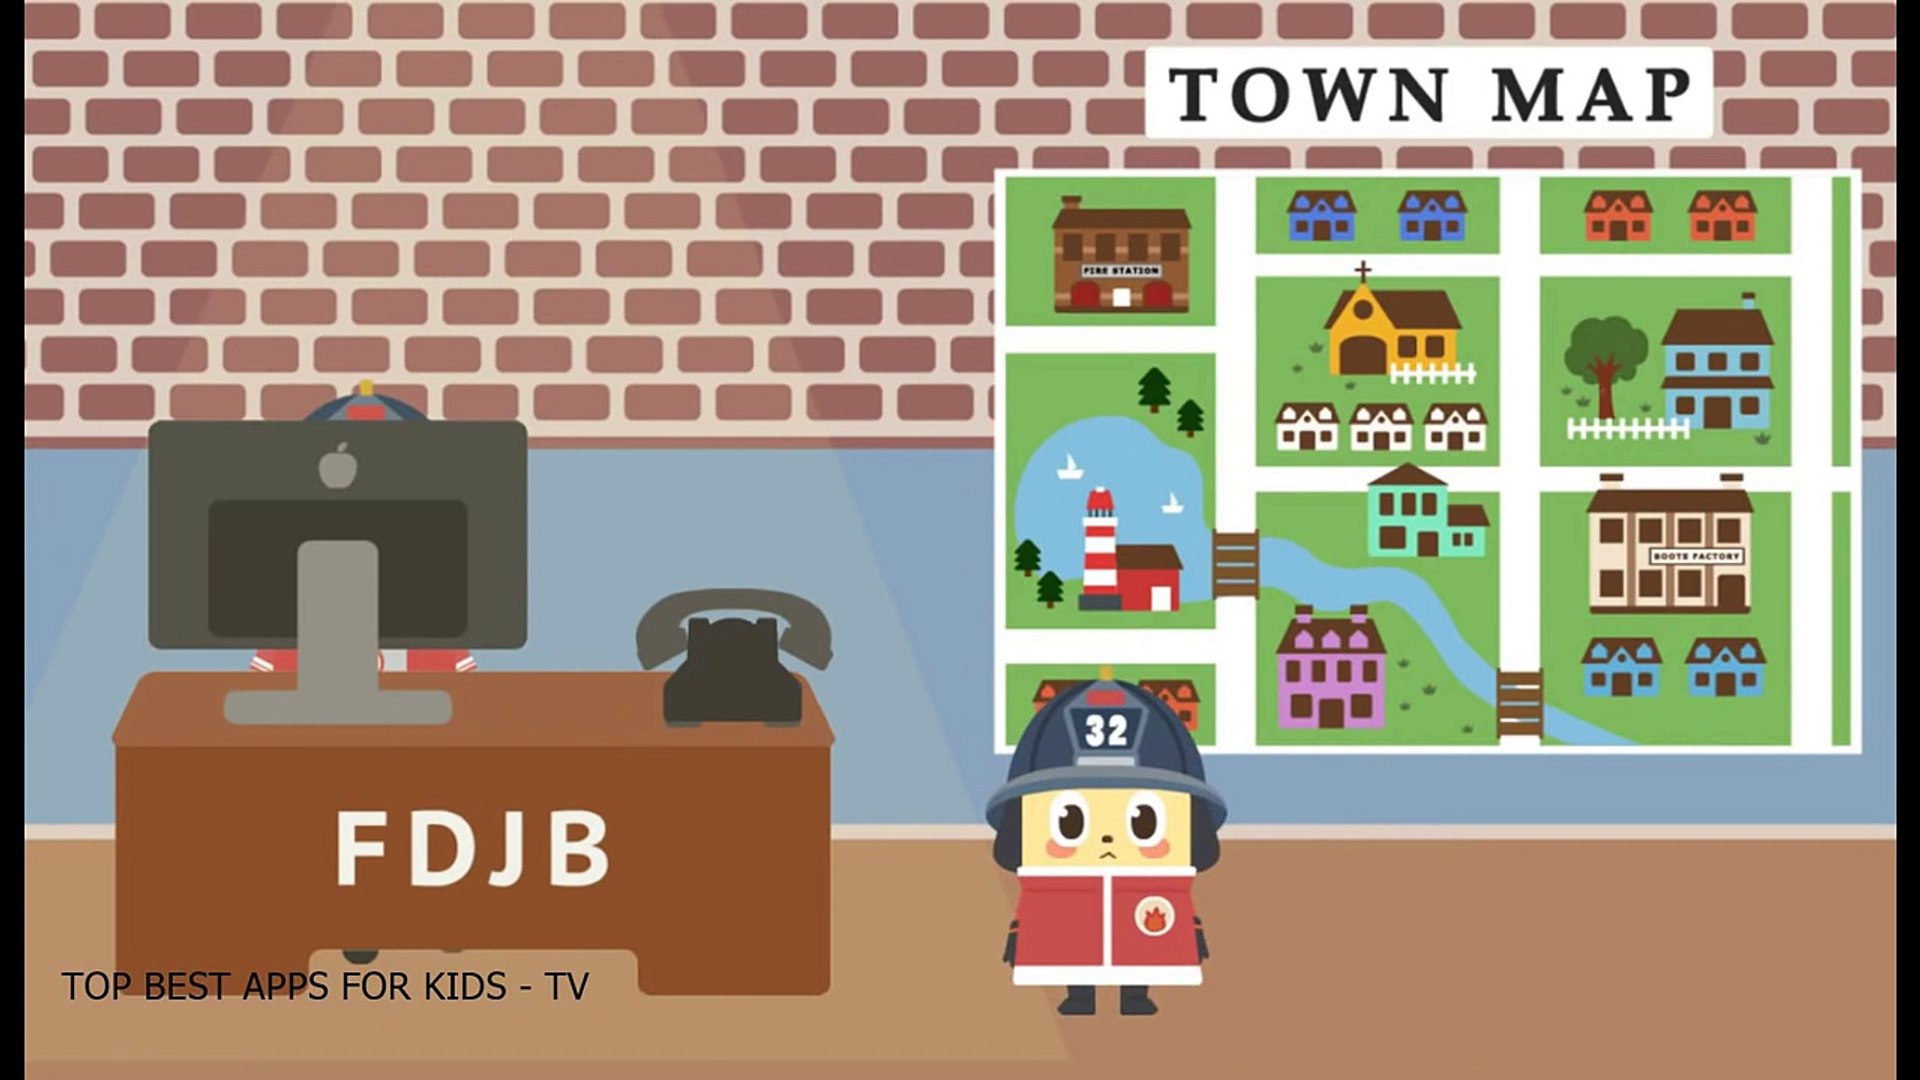 Jobi Jobi Fire Station - Education App gameplay video for Kids